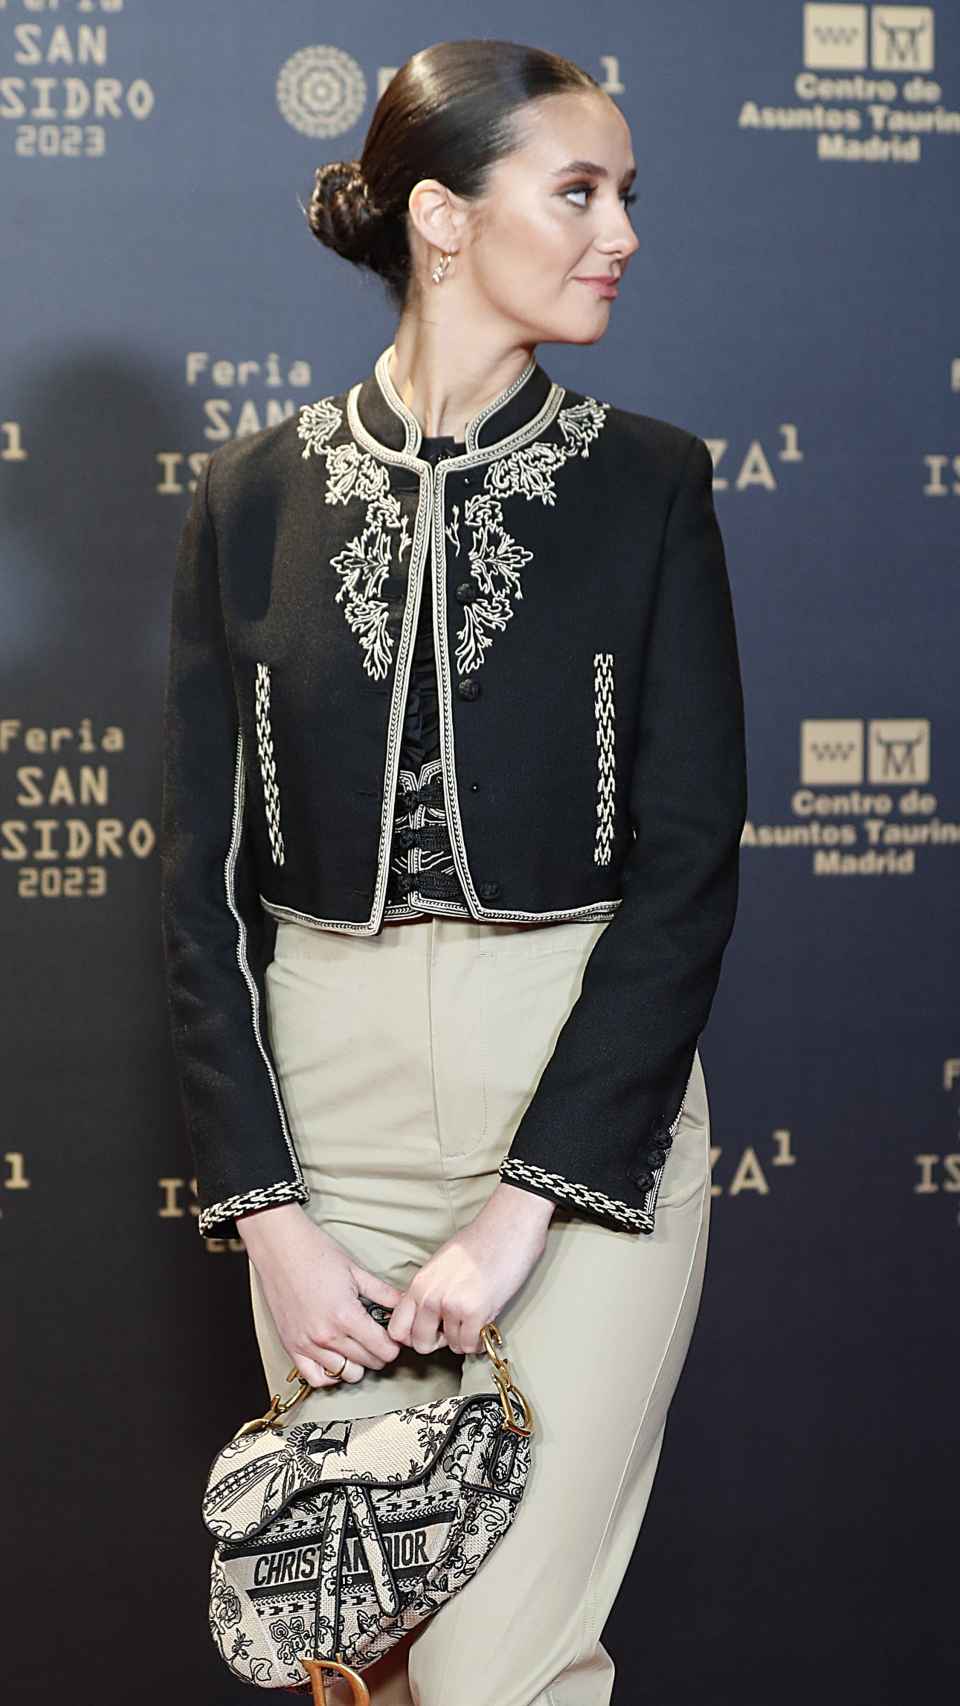 Victoria Federica lució un estilismo de inspiración taurina firmado por Dior.